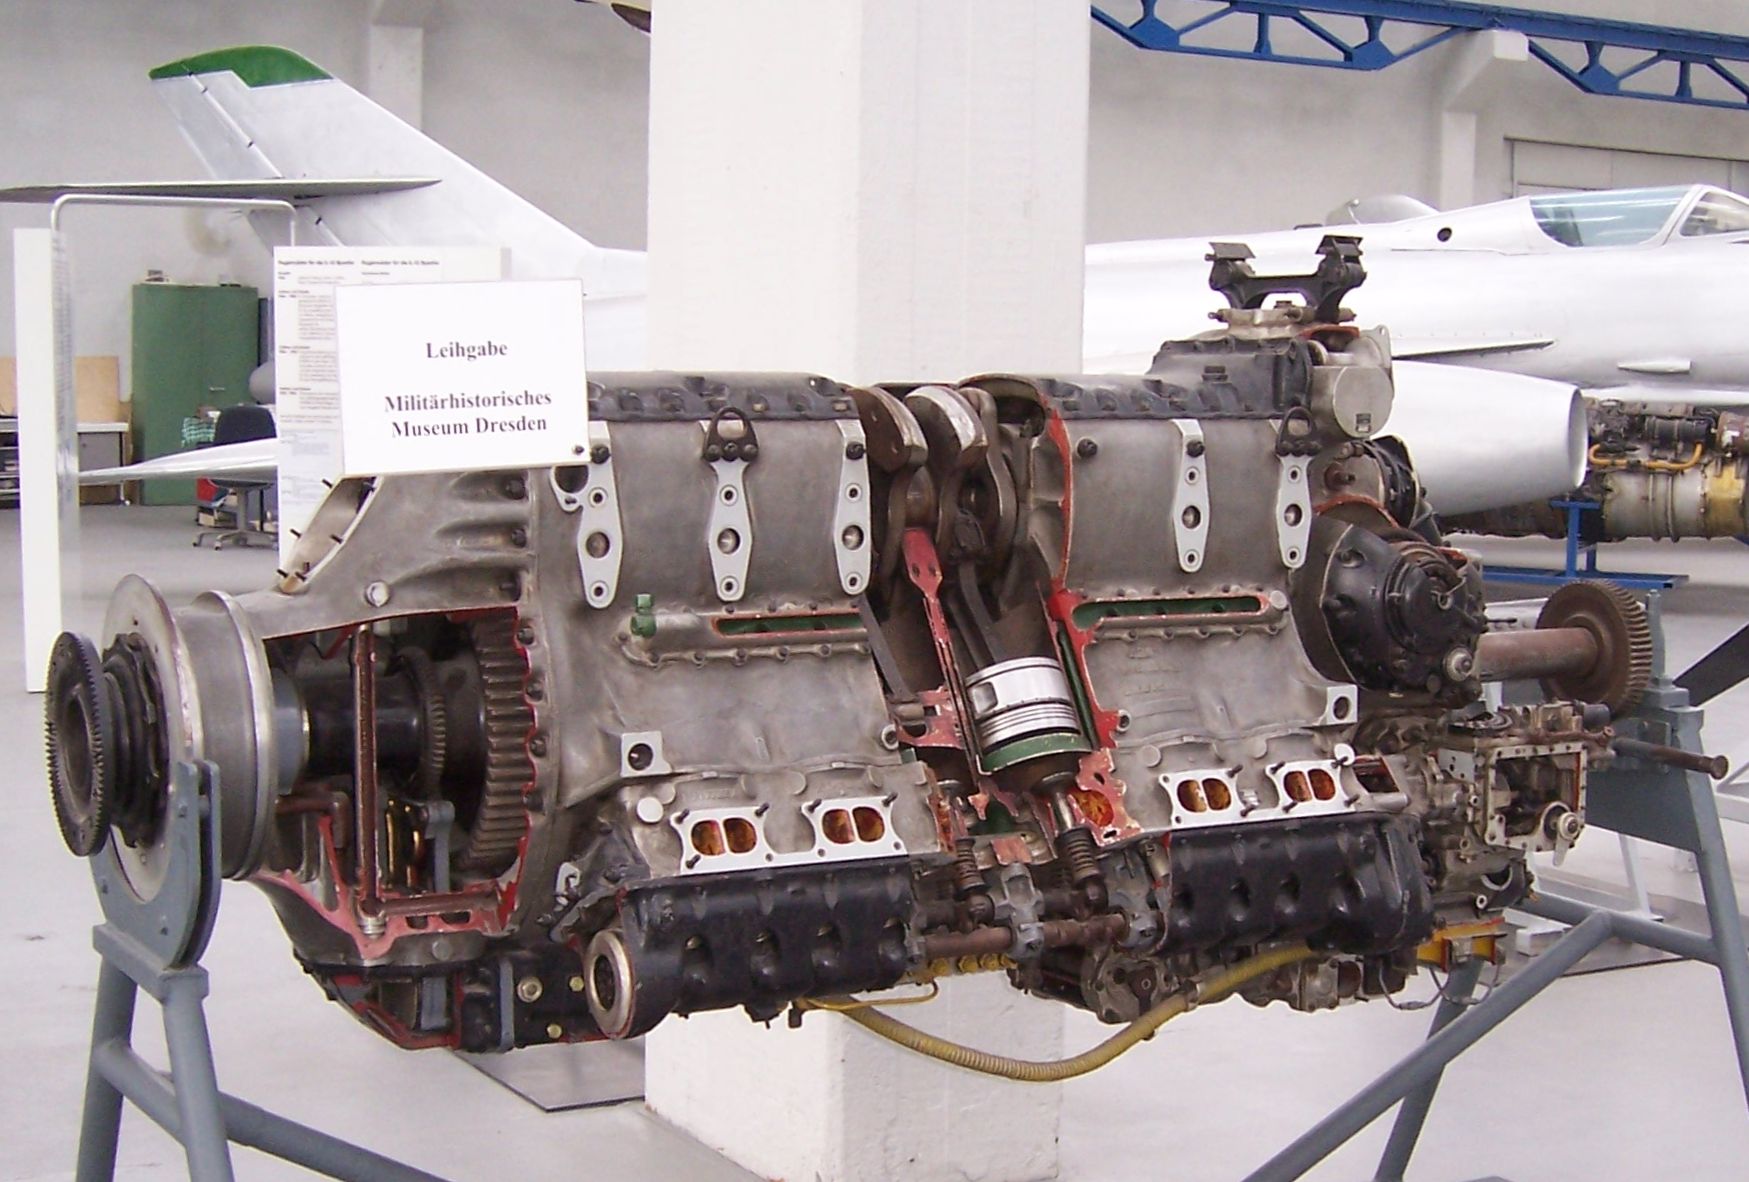 Немецкие двигатели автомобилей. Jumo.213е. Jumo 213a-1. Юмо 213 двигатель. Двигатель Юнкерс юмо 205.